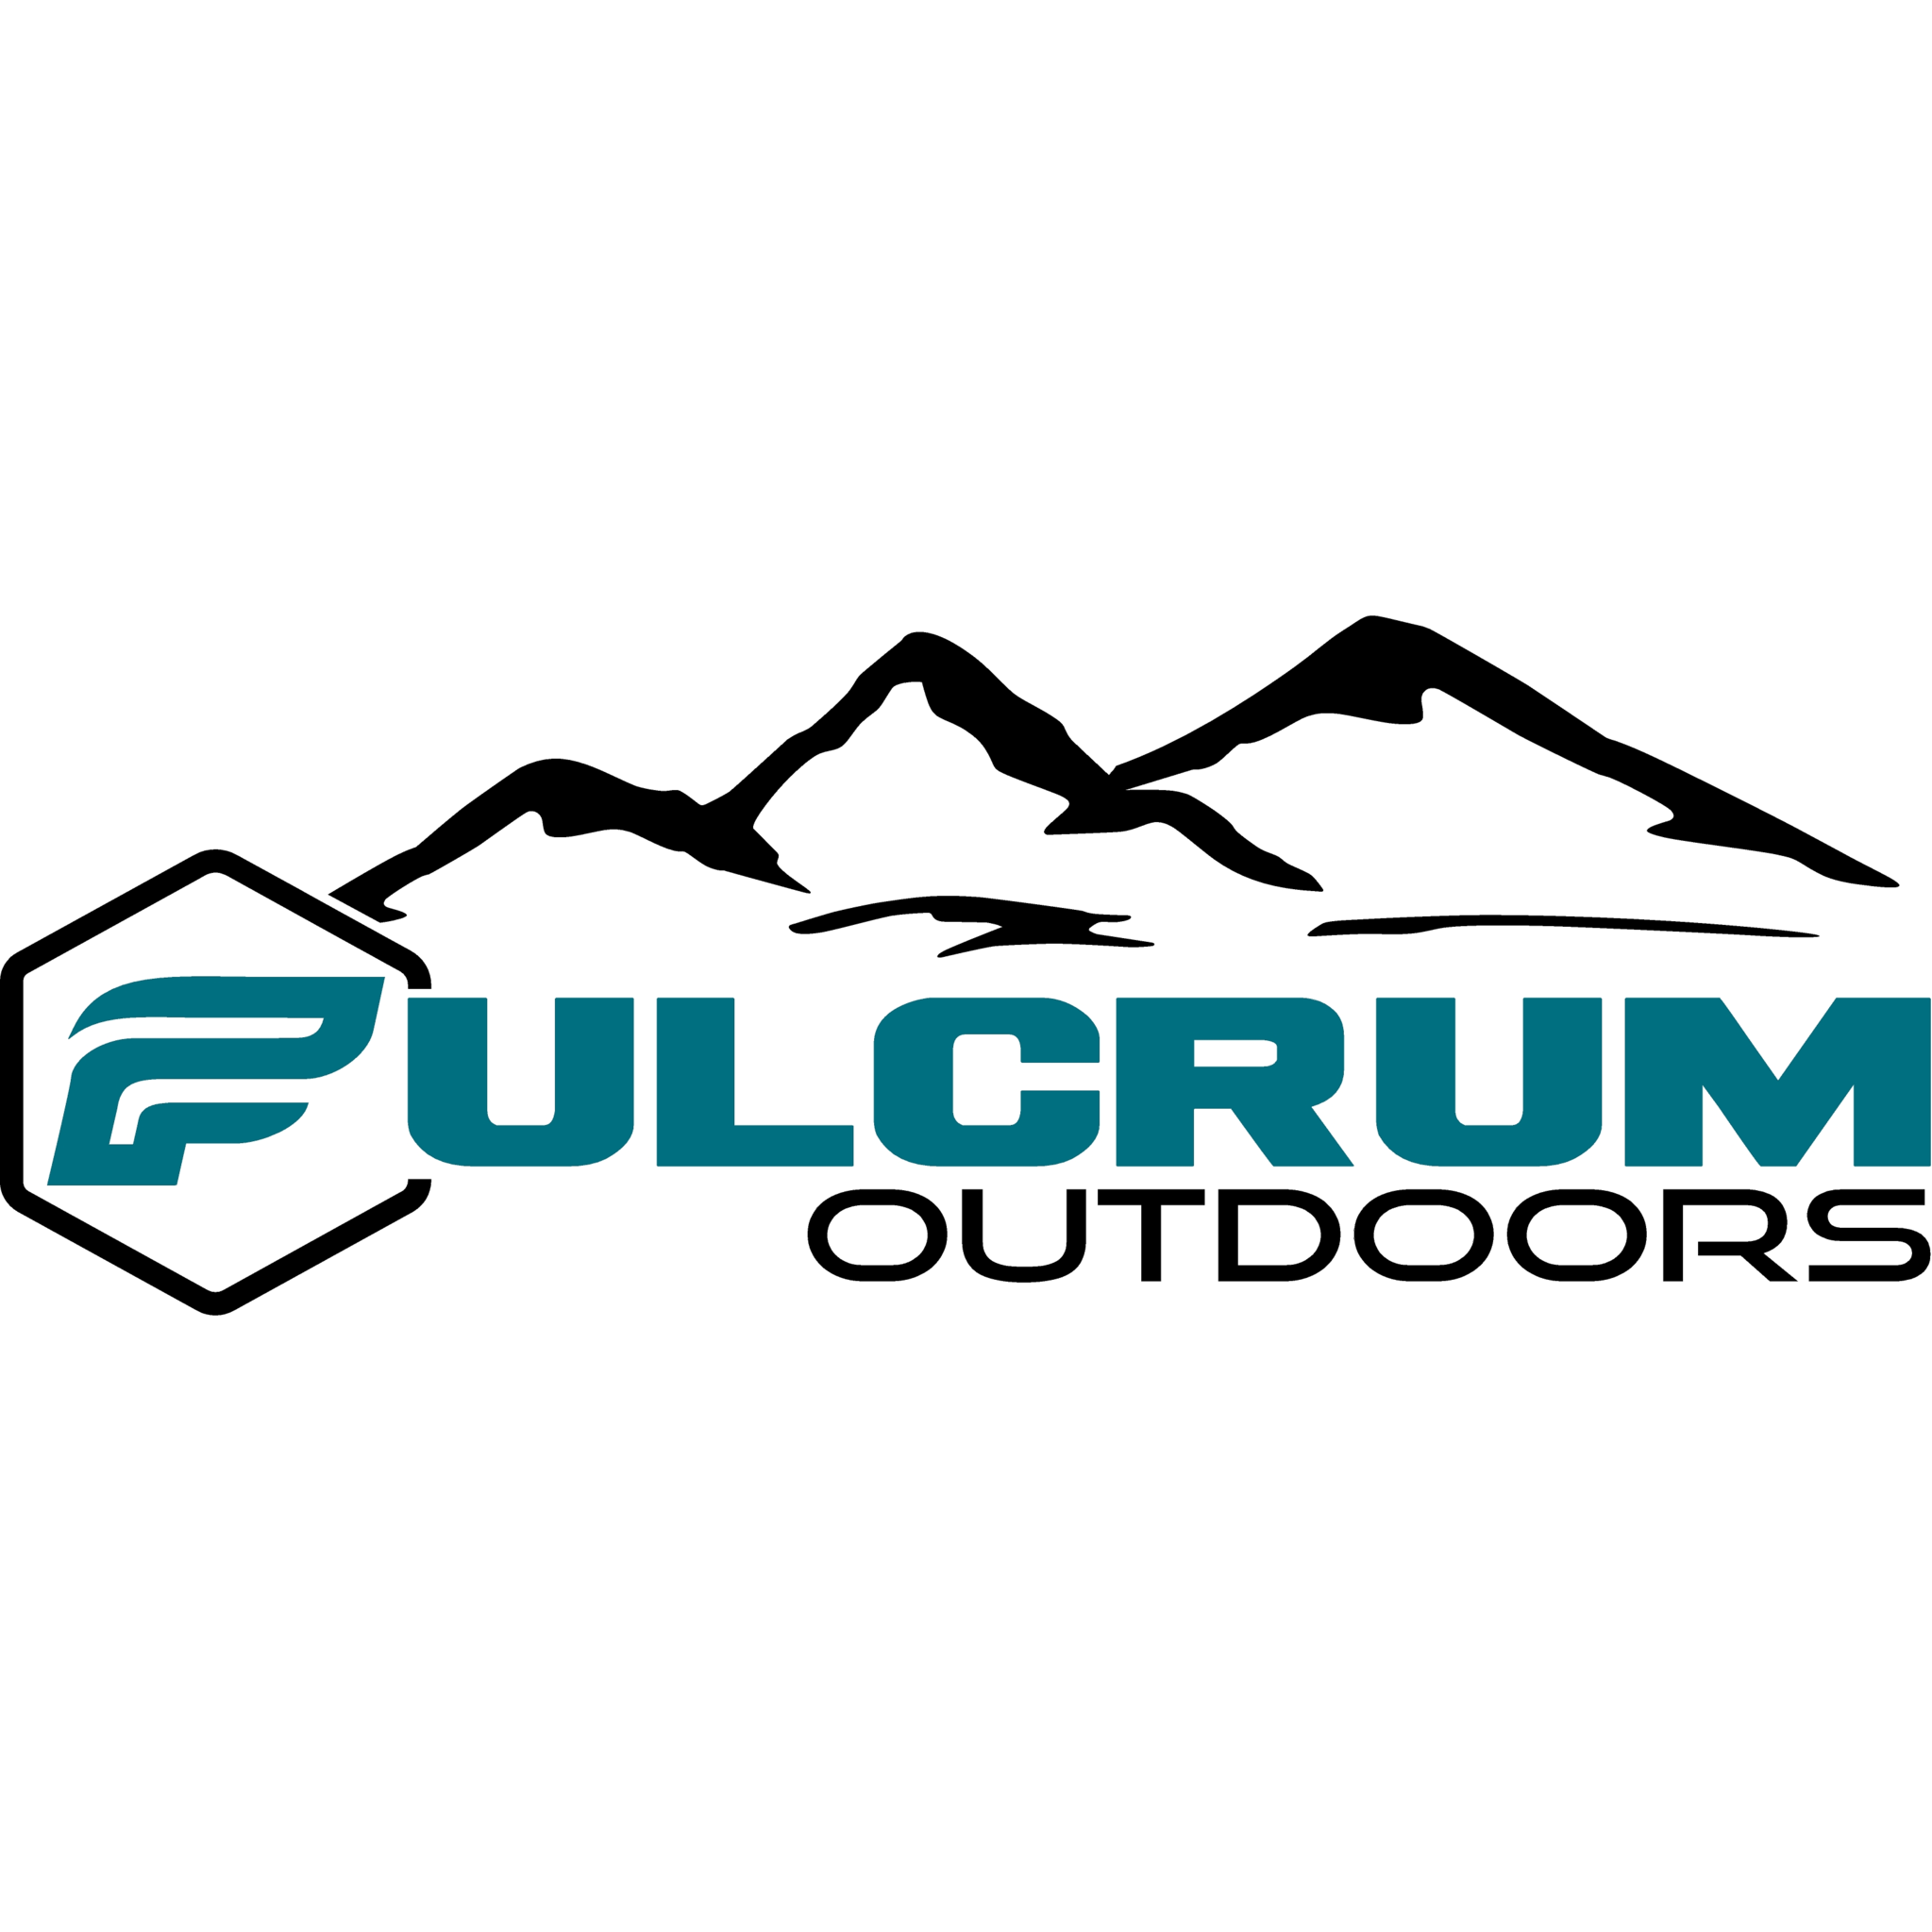 Fulcrum Outdoors